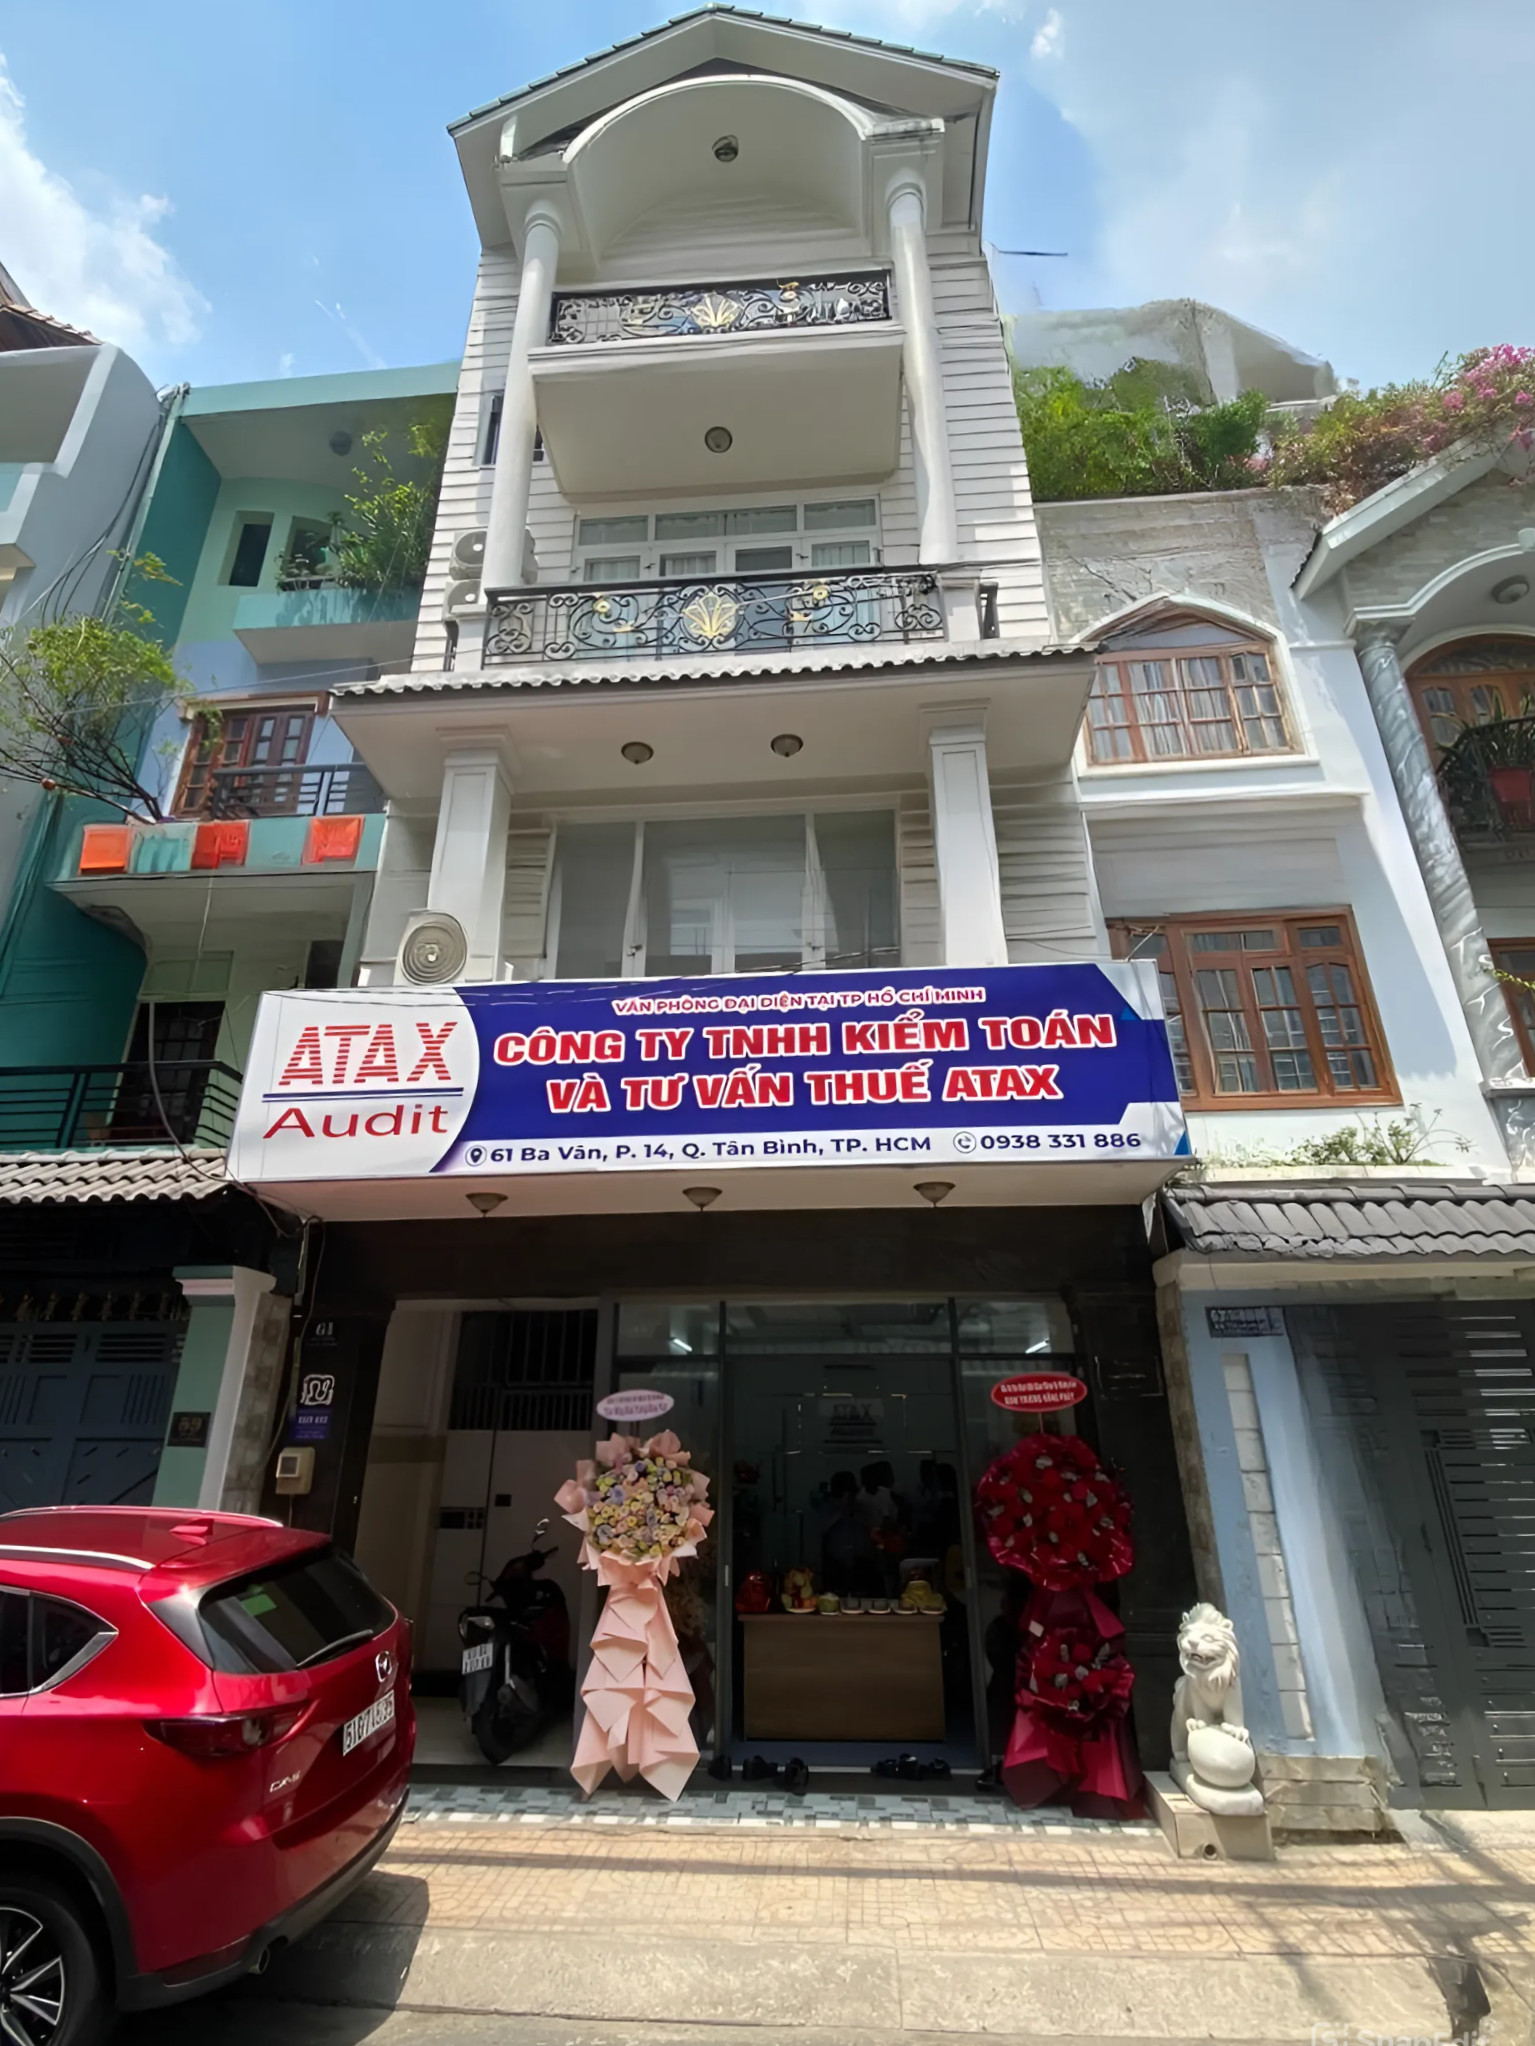 Văn phòng Hồ Chí Minh, địa chỉ: 61 Ba Vân, Phường 14, Quận Tân Bình, TP Hồ Chí Minh